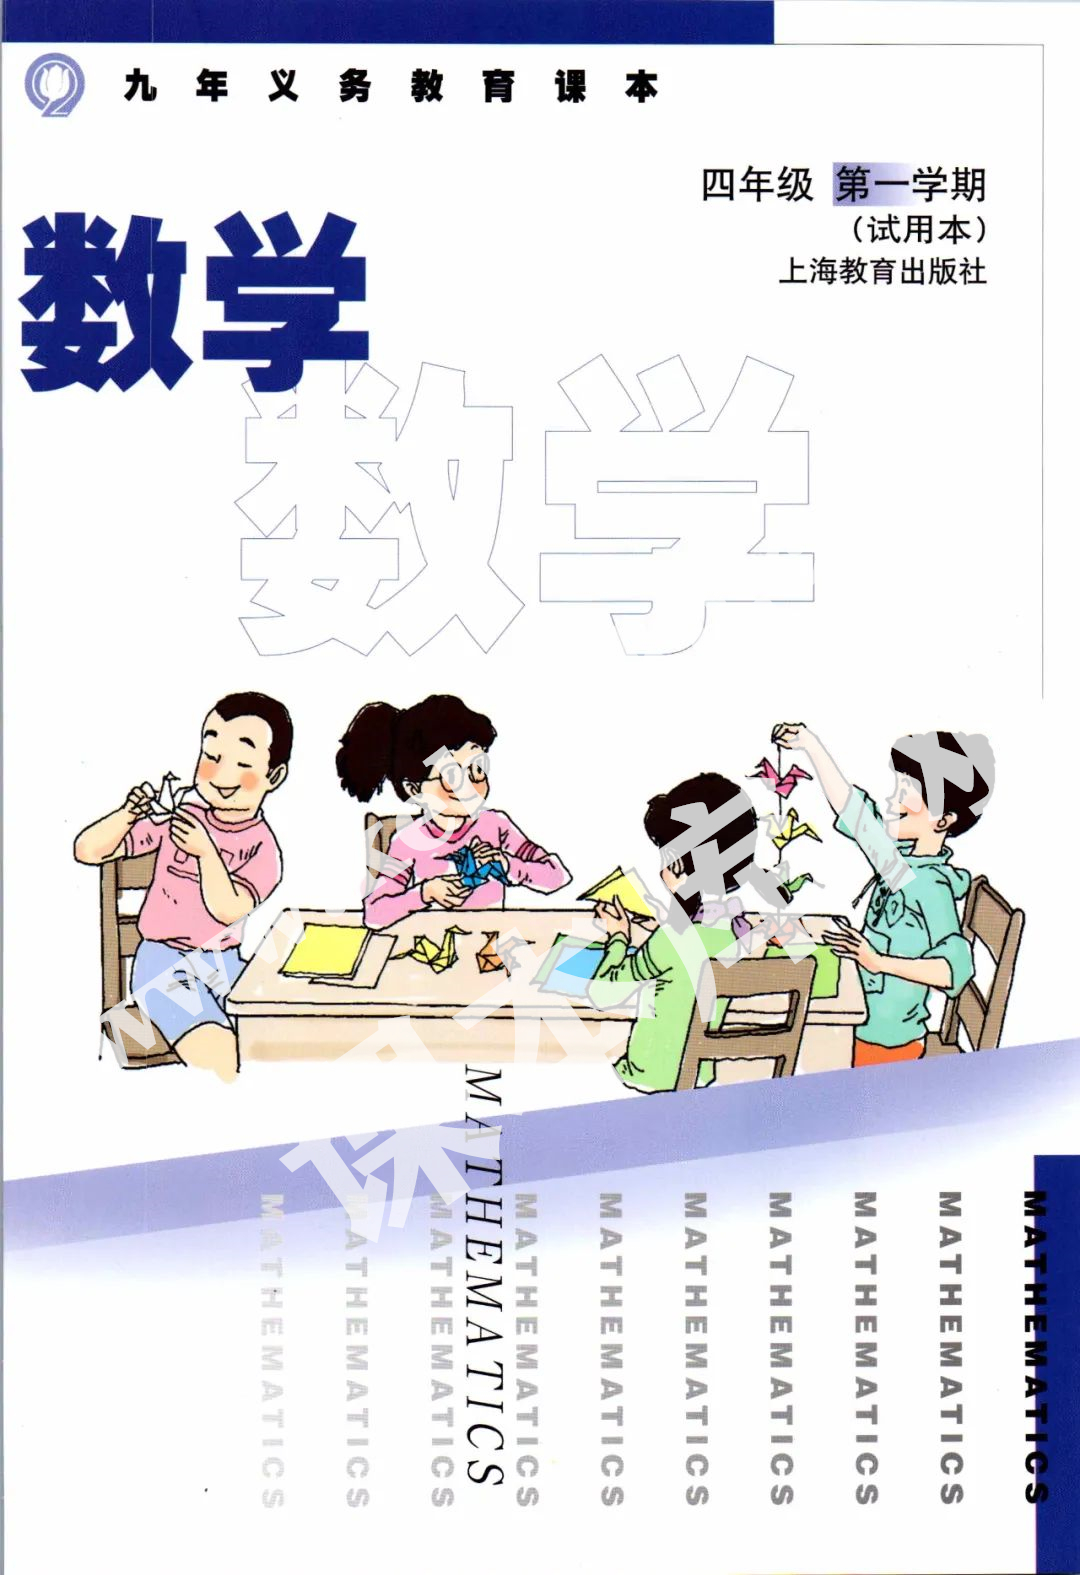 上海教育出版社九年义务教育教科书四年级数学上册电子课本